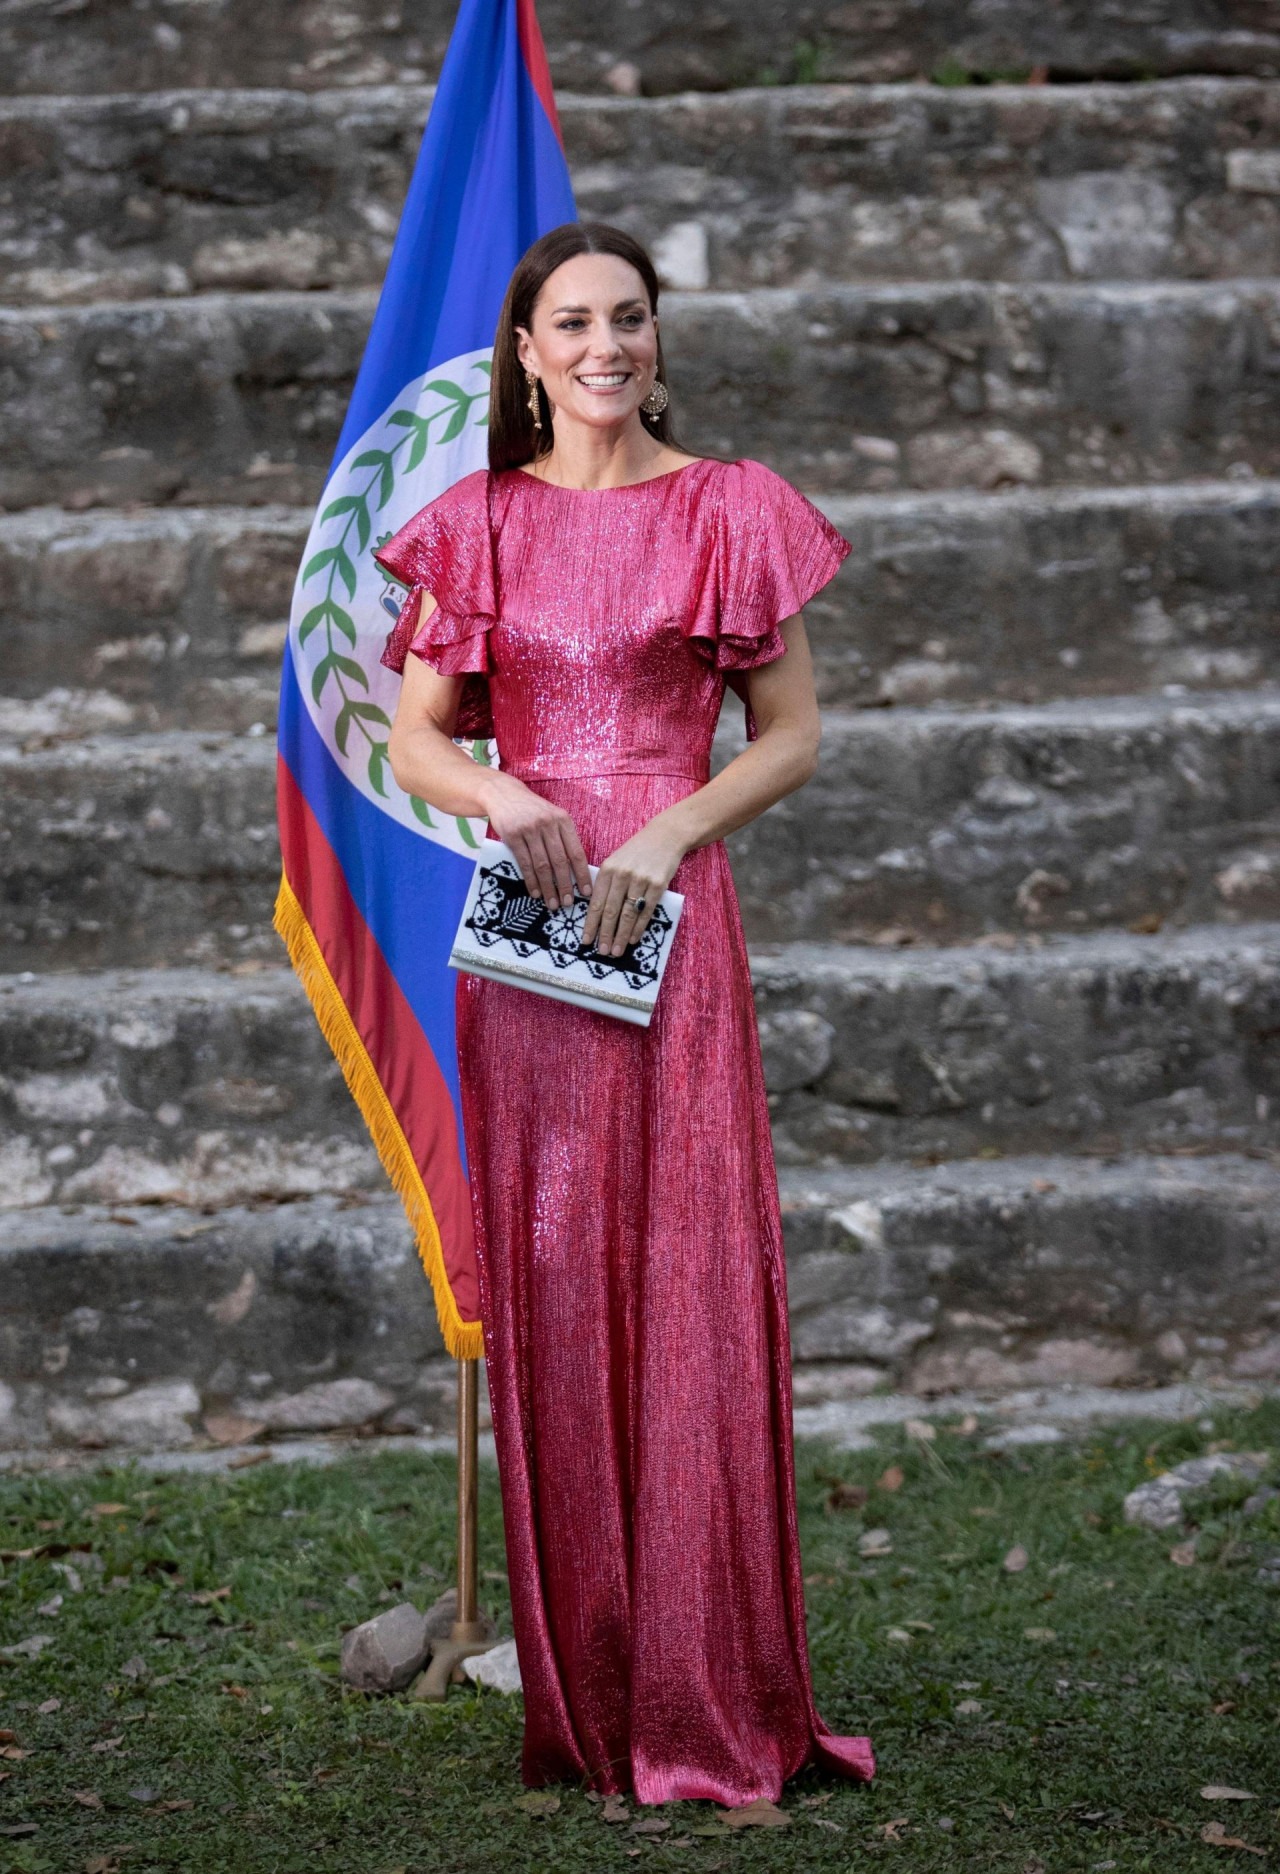 Ngày 21 tháng 3 Nữ công tước xứ Cambridge tham dự tiệc chiêu đãi do Toàn quyền Belize tổ chức để kỷ niệm Năm lễ Bạch kim của Nữ hoàng